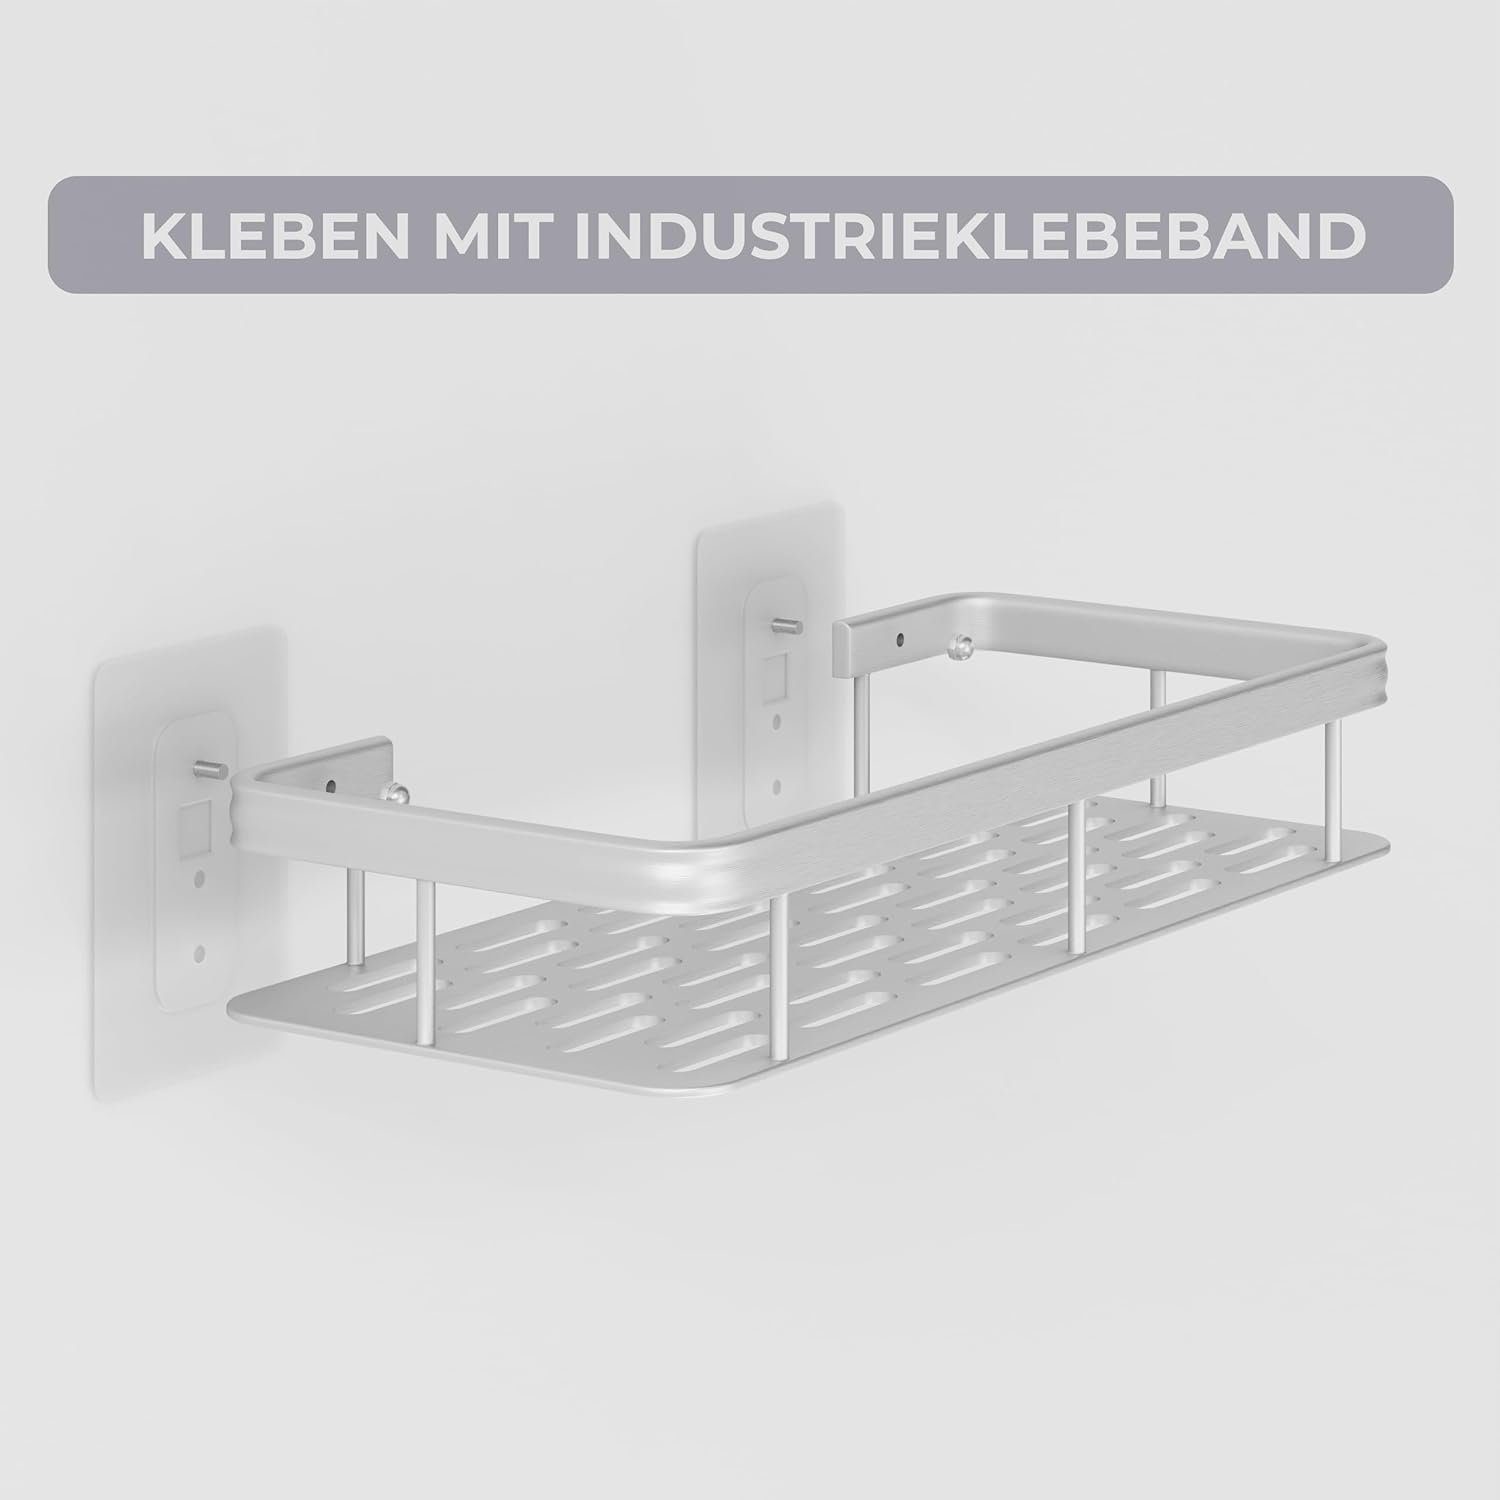 LIEBHEIM Duschablage Duschkorb - Industrie Klebeband - Bohren 1-tlg. ohne Badregal Silber Aluminium